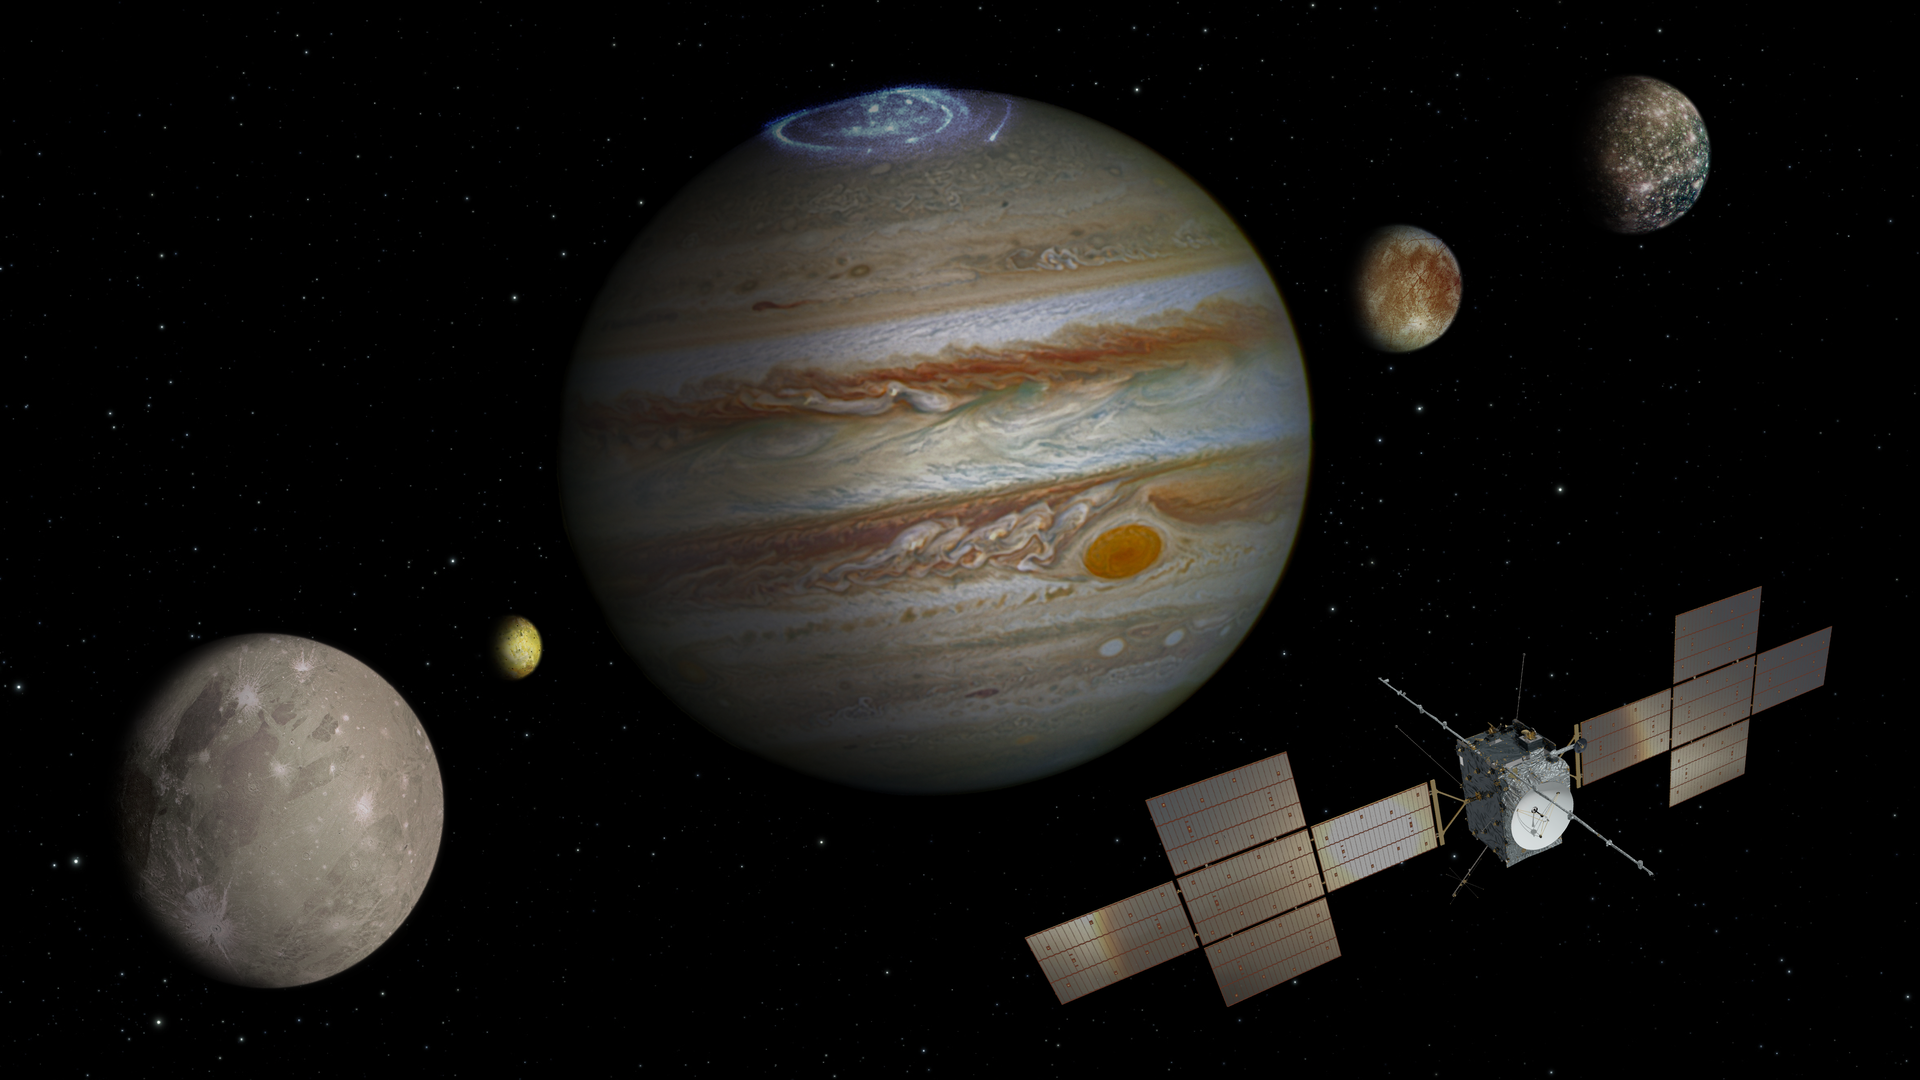 La ESA lanza la estación espacial interplanetaria JUICE para buscar vida en los satélites de Júpiter